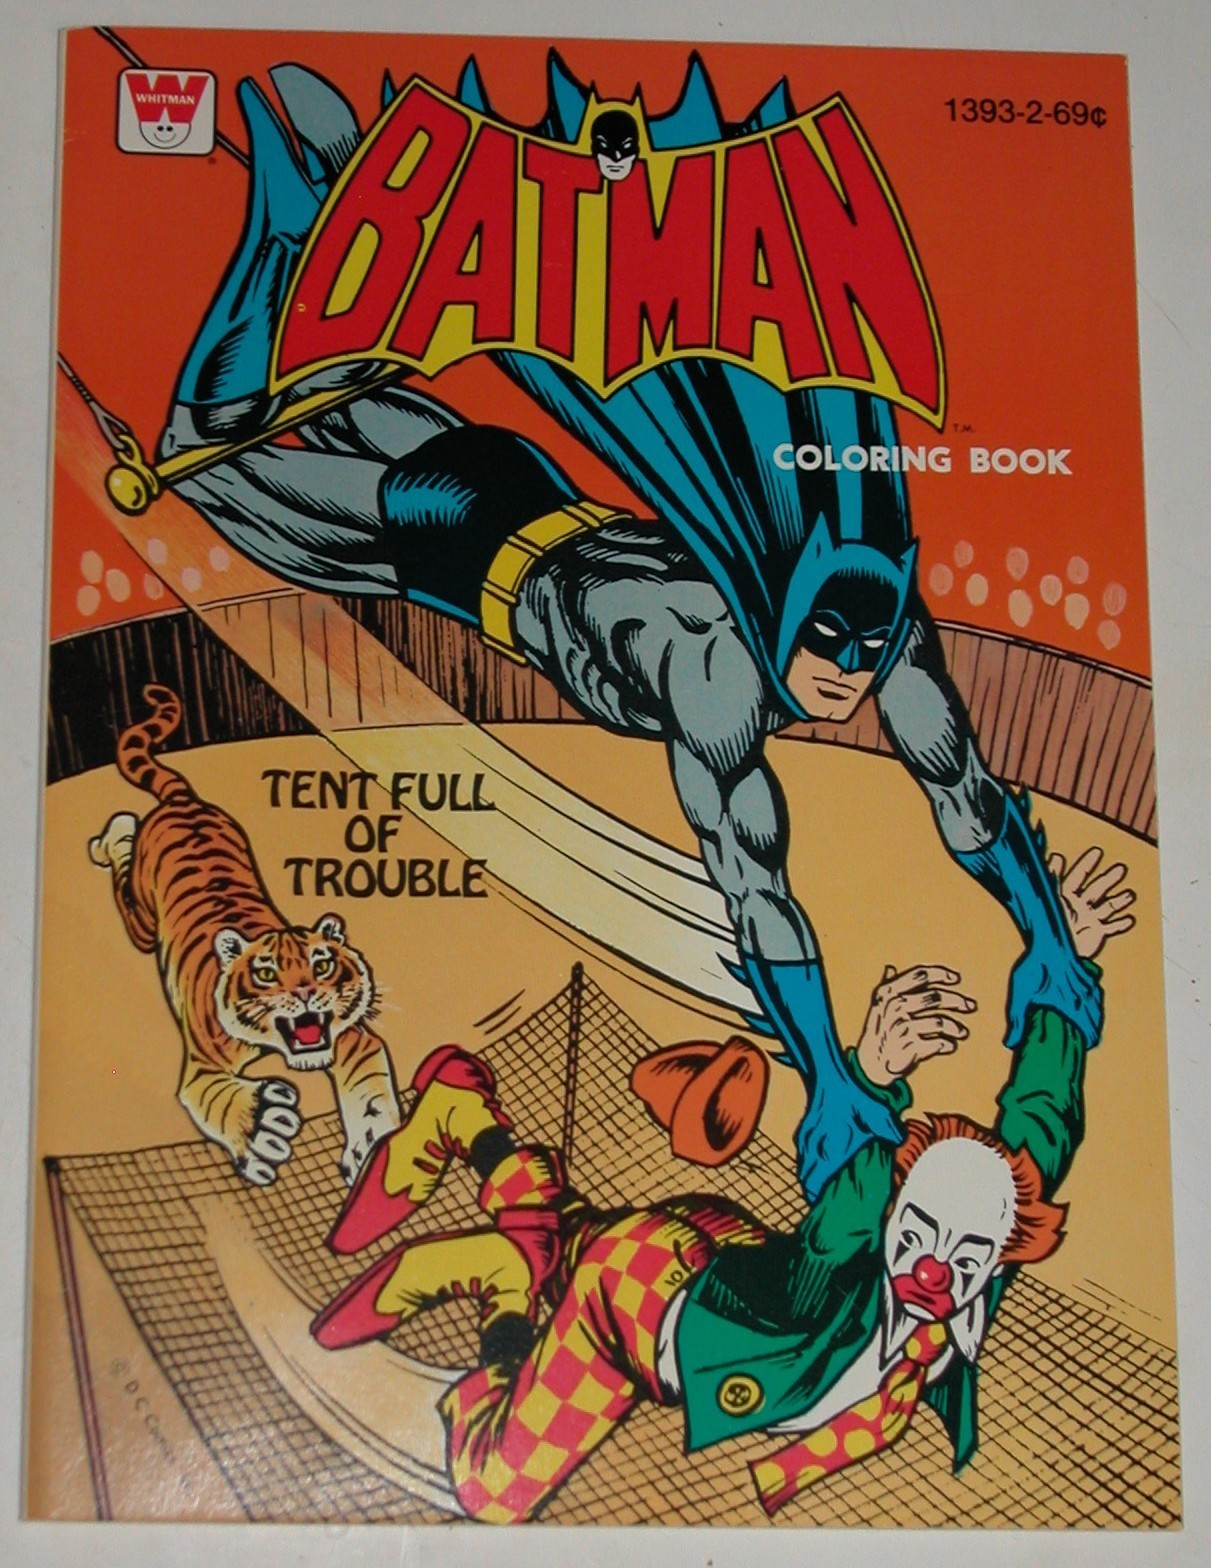 The Bat Channel!: Vintage Batman coloring books